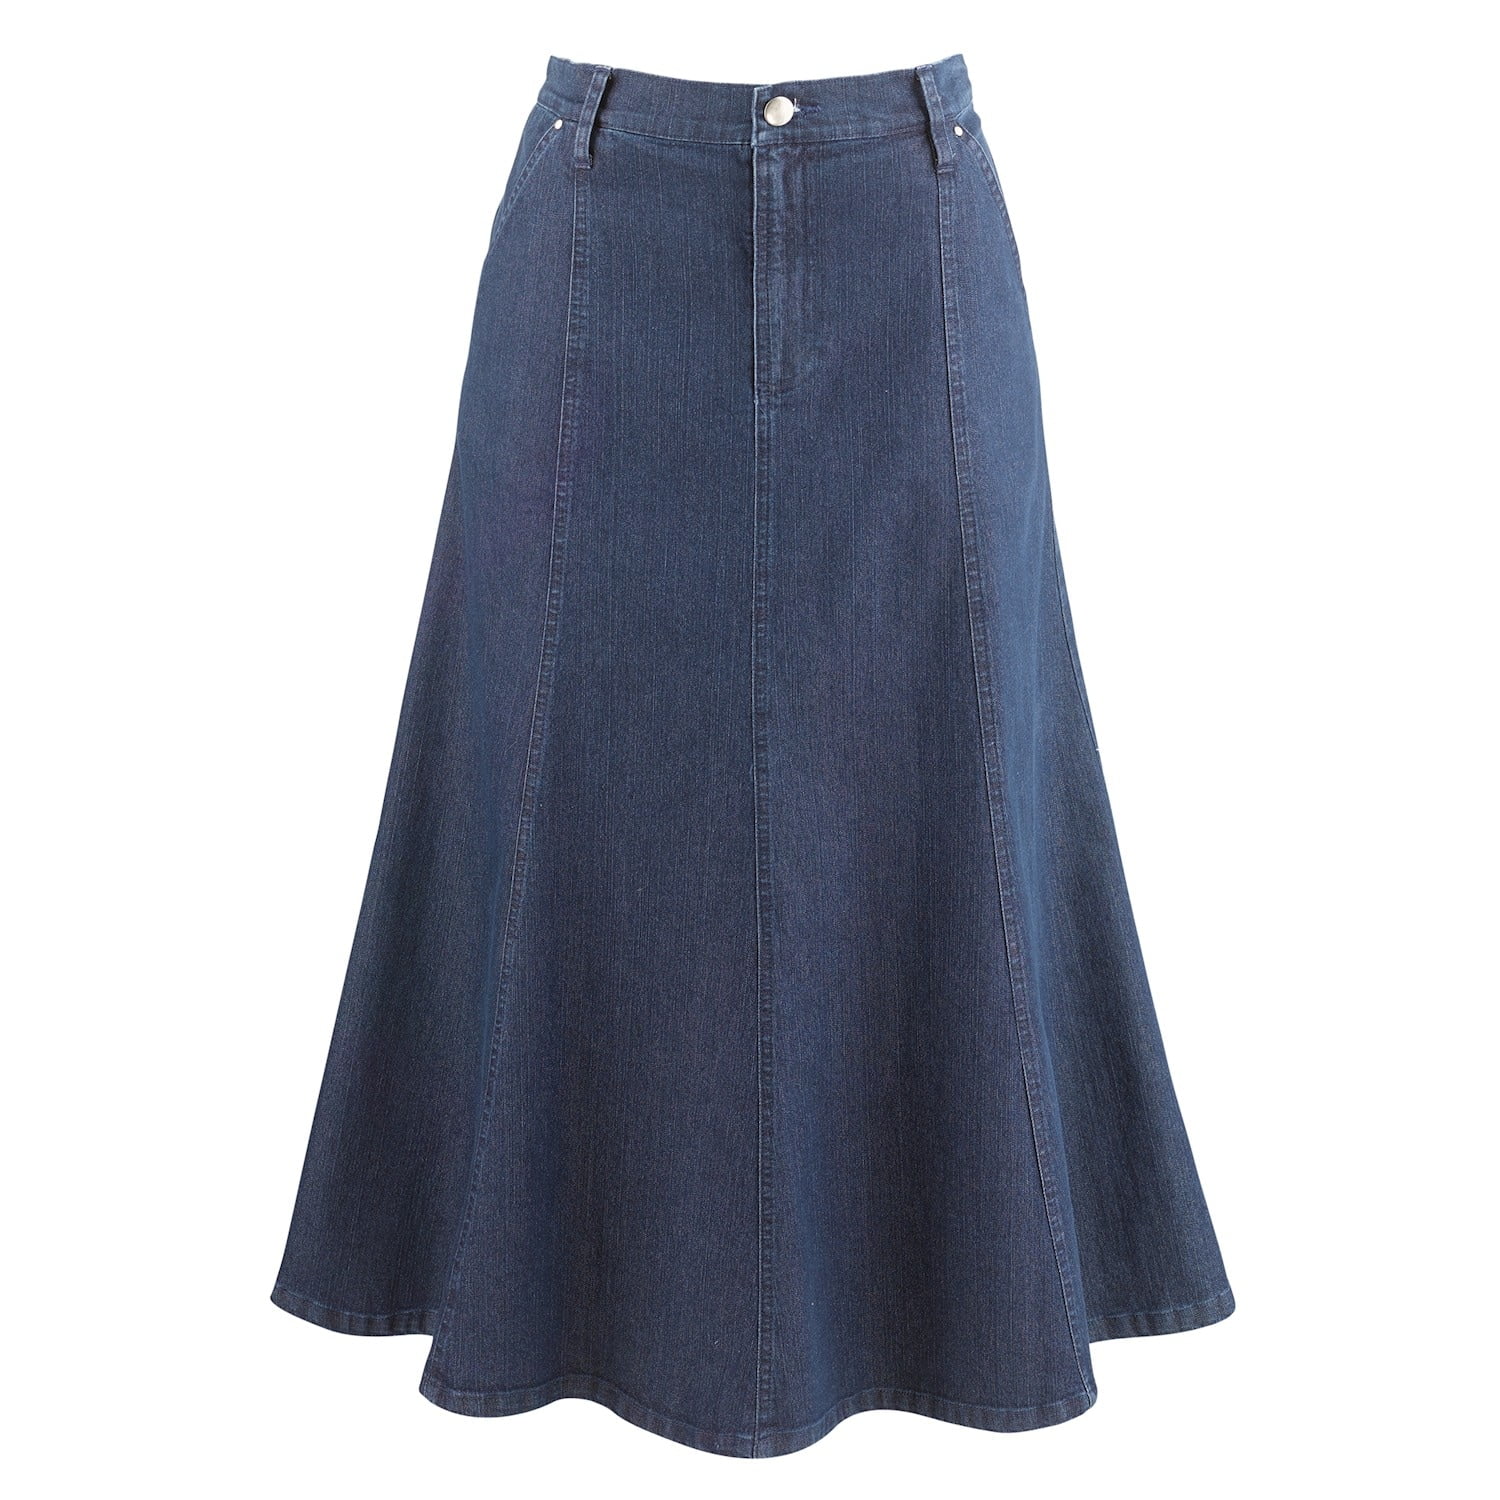 CATALOG CLASSICS Womens Long Denim Skirt Blue Jean Skirts for Women ...